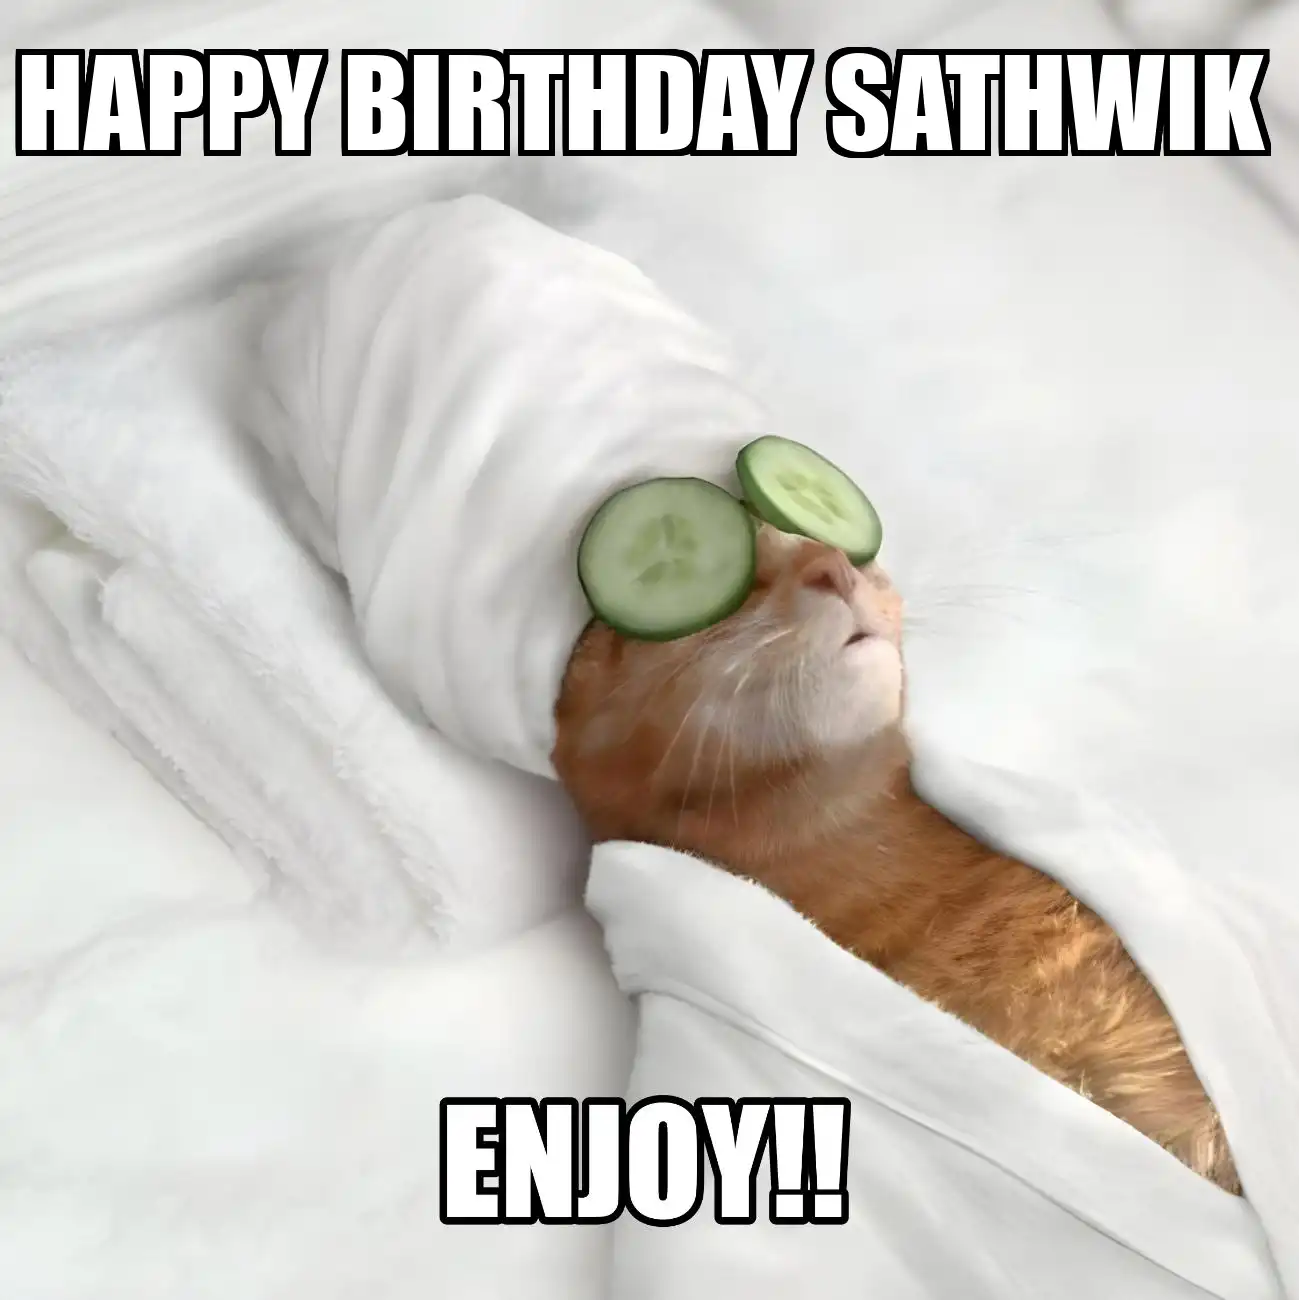 Happy Birthday Sathwik Enjoy Cat Meme